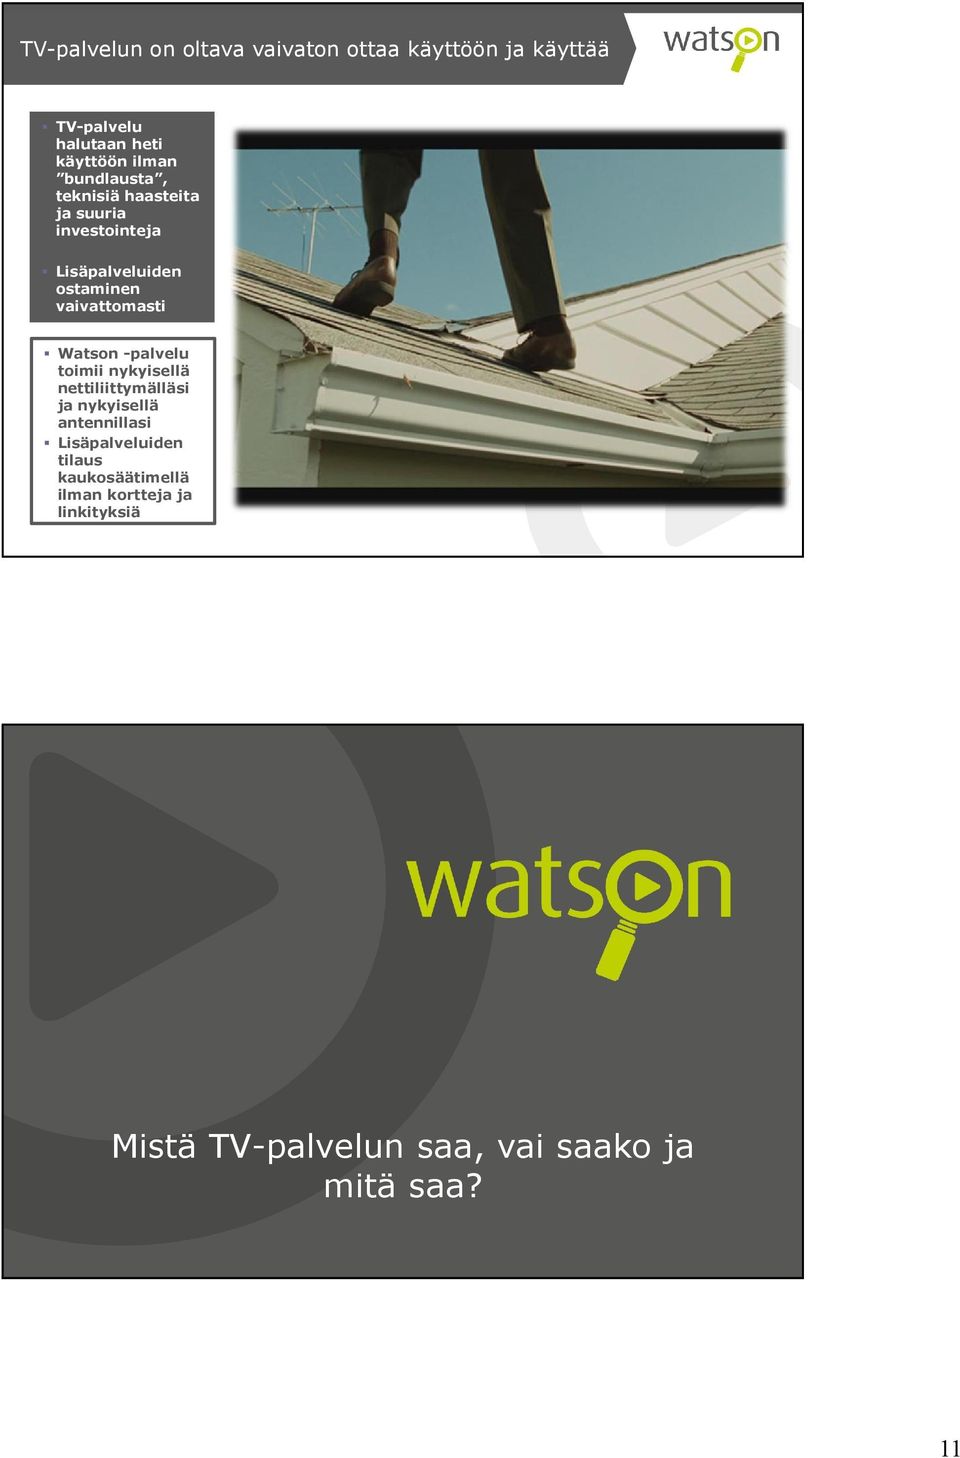 Watson -palvelu toimii nykyisellä nettiliittymälläsi ja nykyisellä antennillasi Lisäpalveluiden